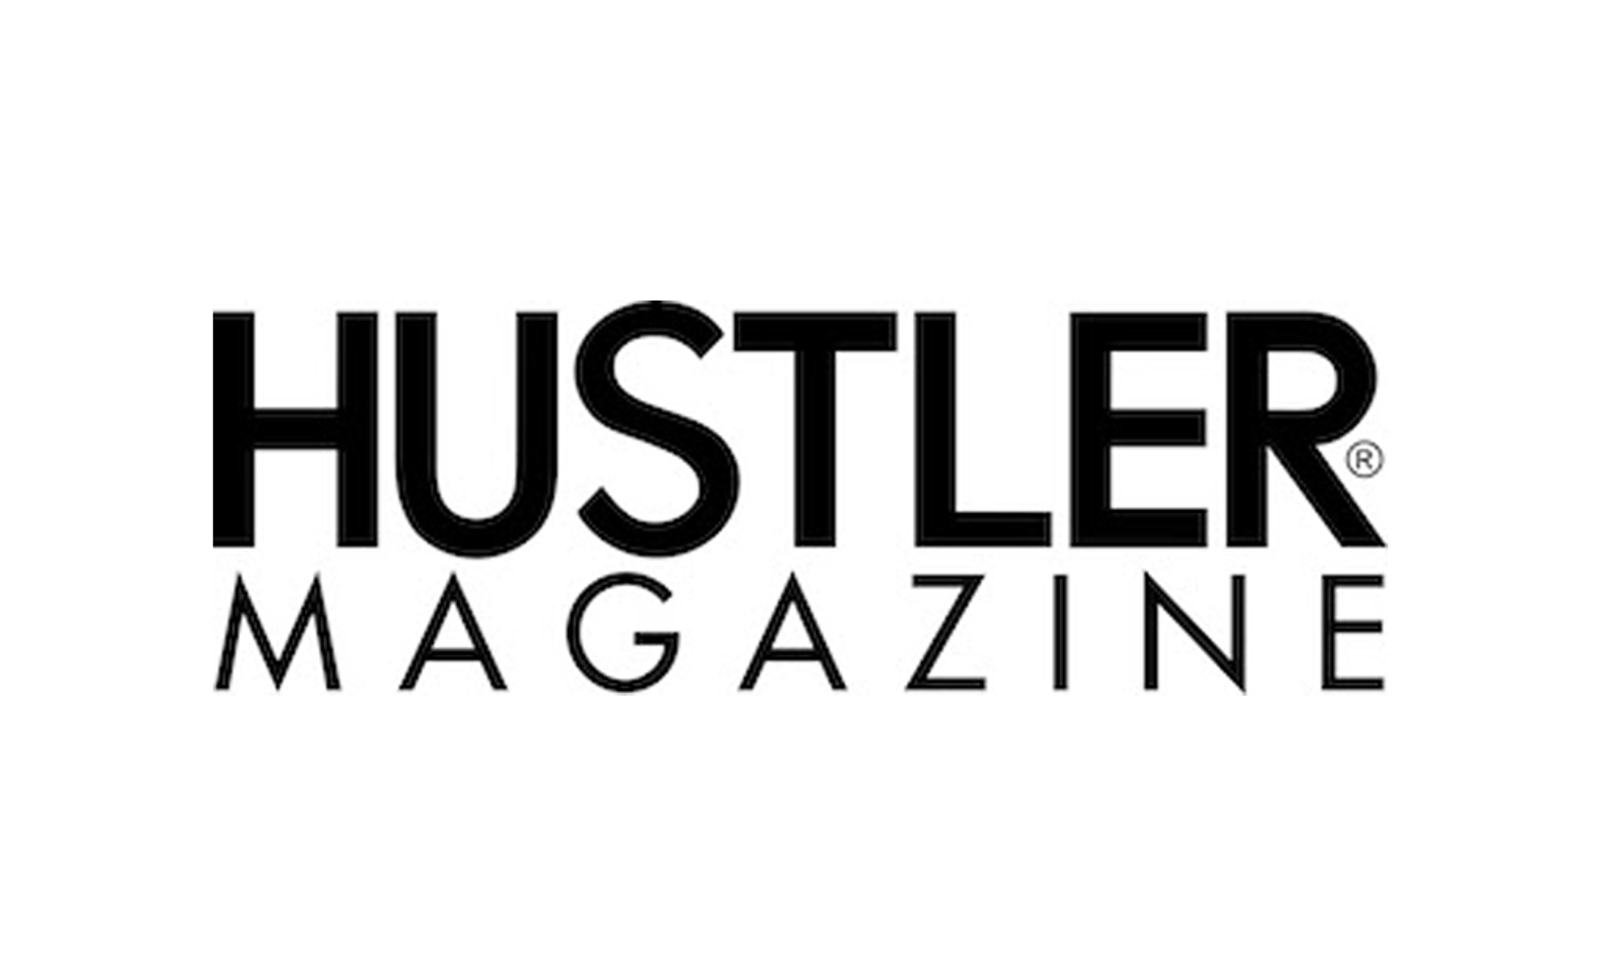 Hustler Magazine's September 2022 Issue Available